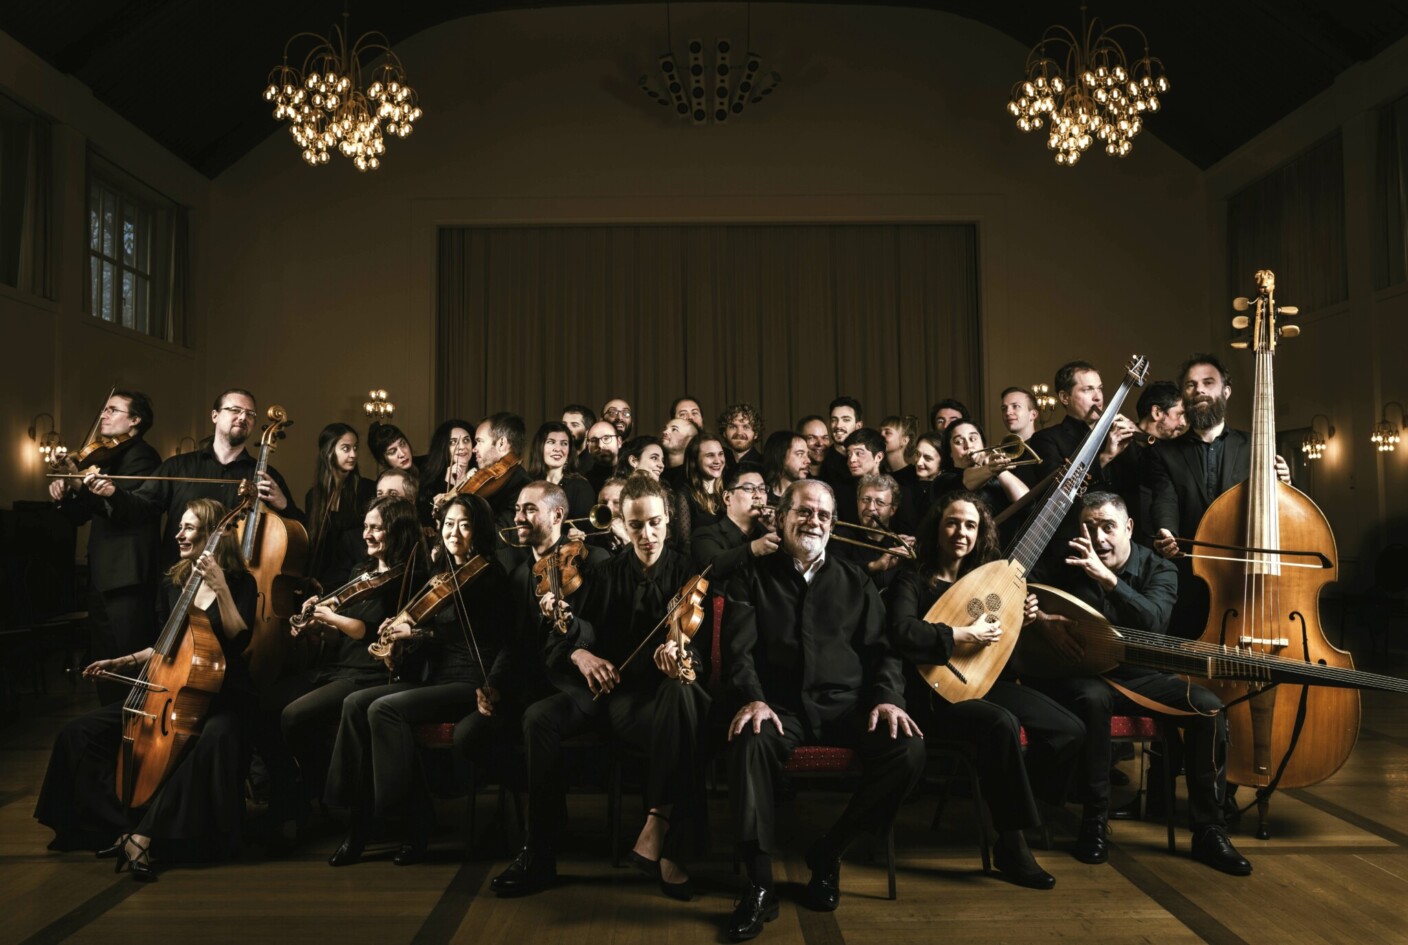 Das La Cetra Barockorchester eröffnet das Festival feierlich mit Musik von Händel